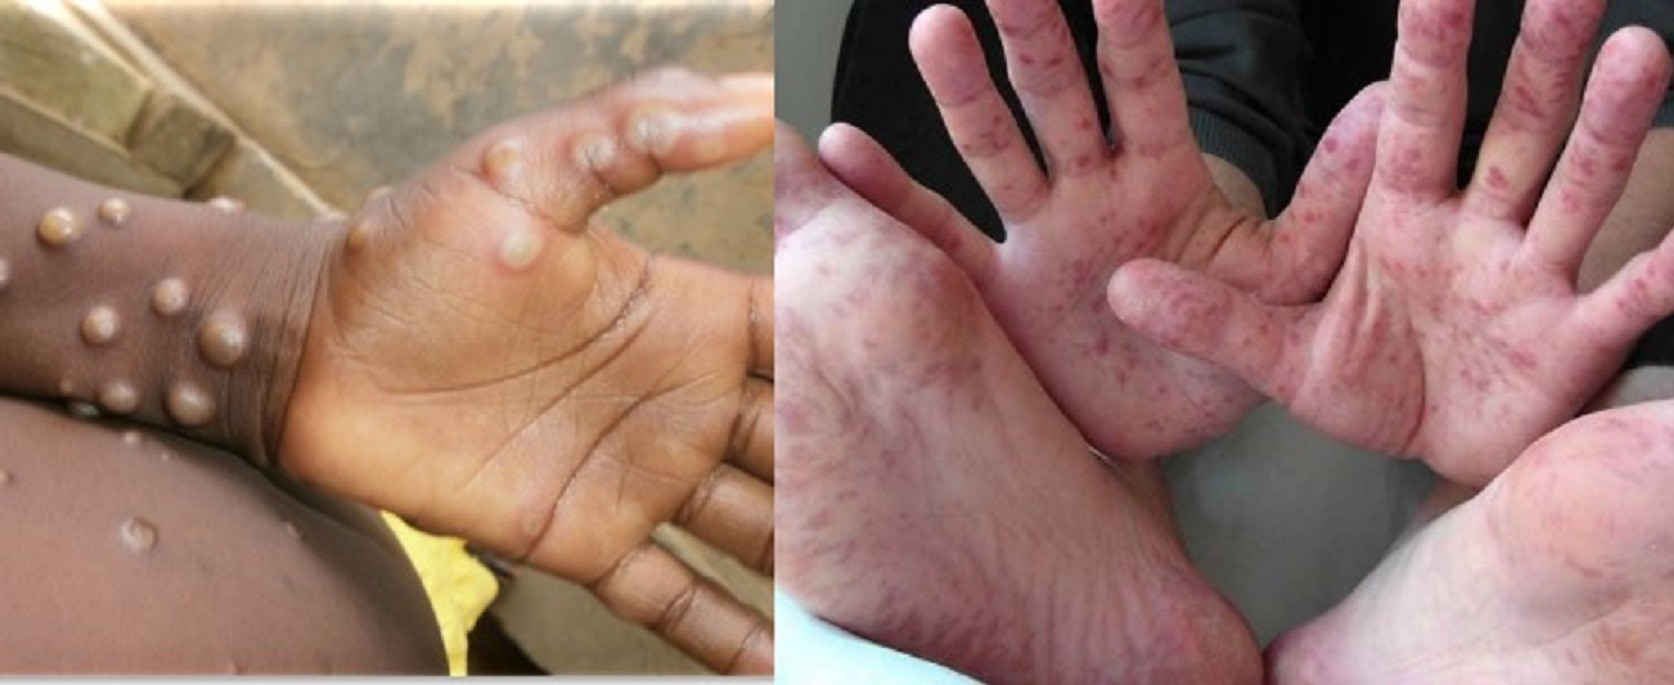 India Has Not Registered Any Case Of Monkeypox But Tracked Closely Officials Said Yesterday | Monkeypox In India: भारत में मंकीपॉक्स का एक भी केस नहीं, जानिए दो वेरिएंट वाले वायरस से